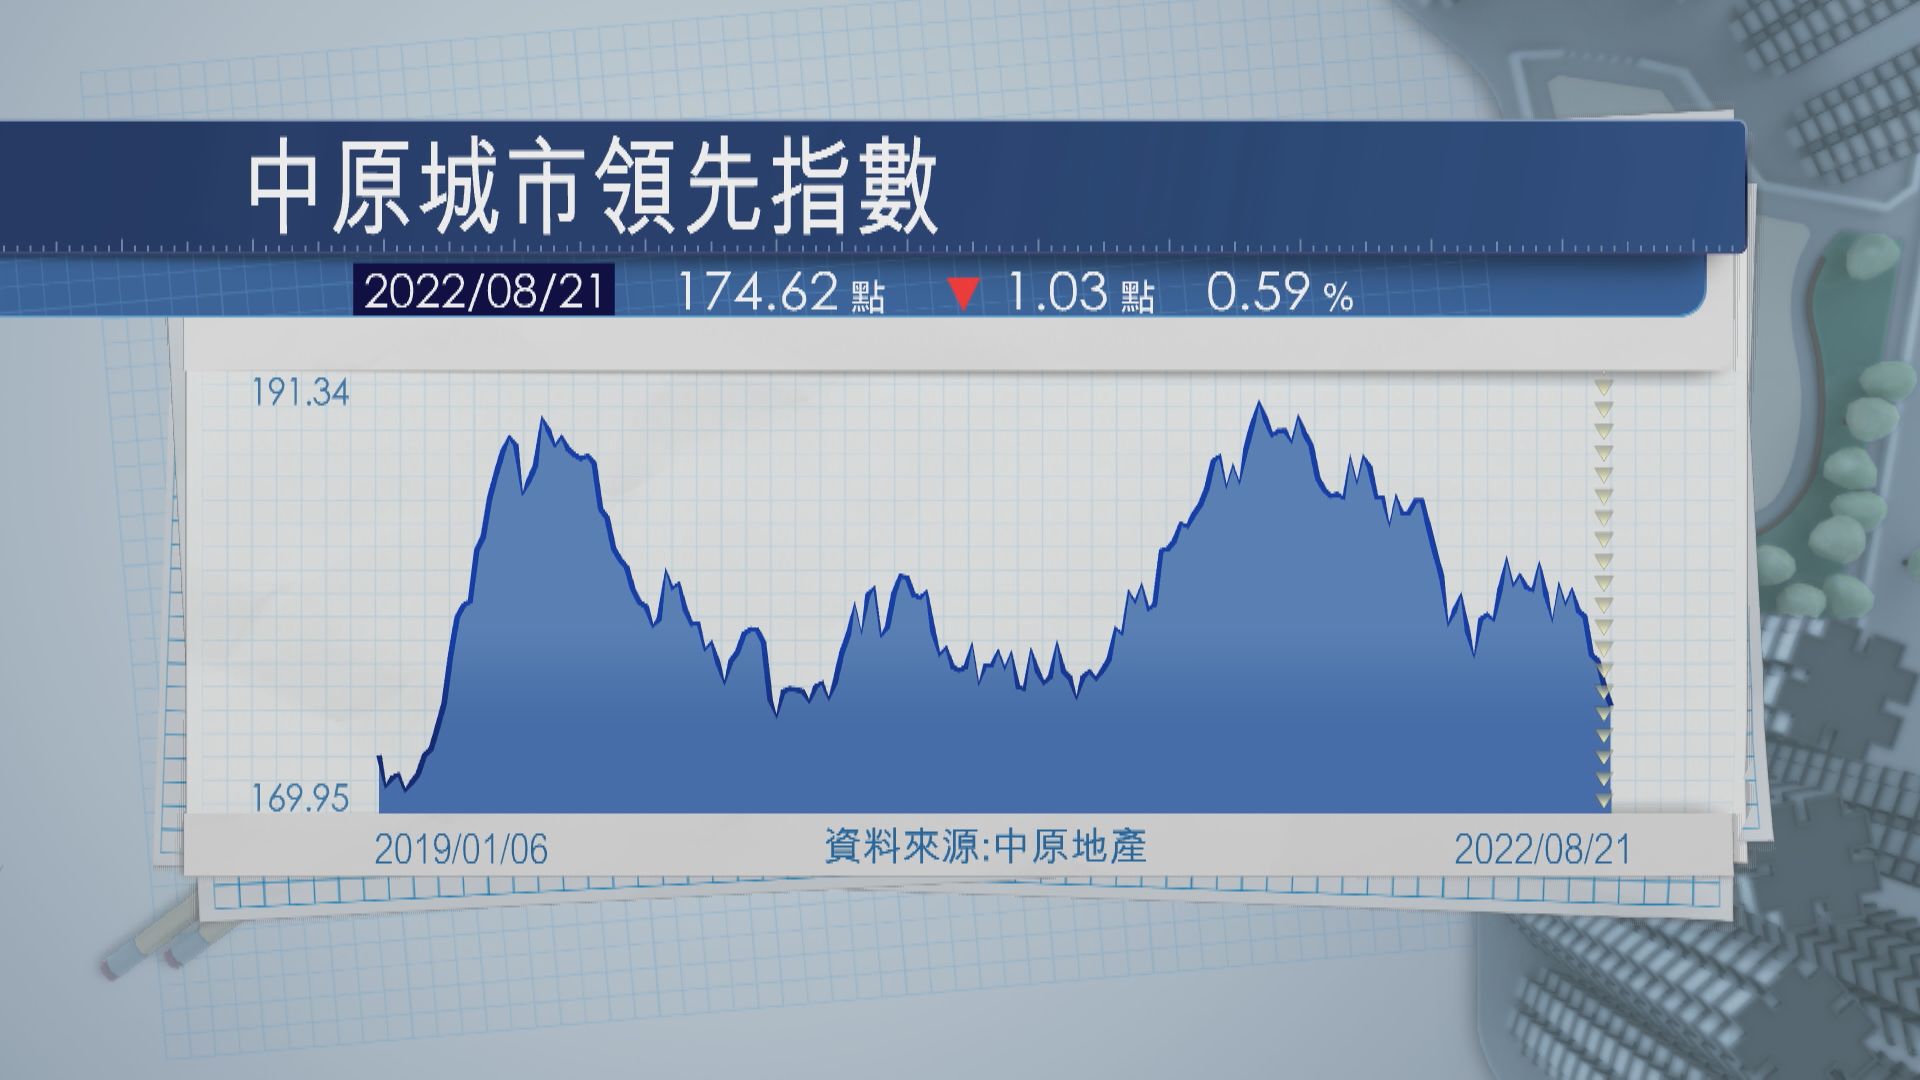 【樓市下滑】CCL連跌6周  九龍樓價4周累跌3.8%